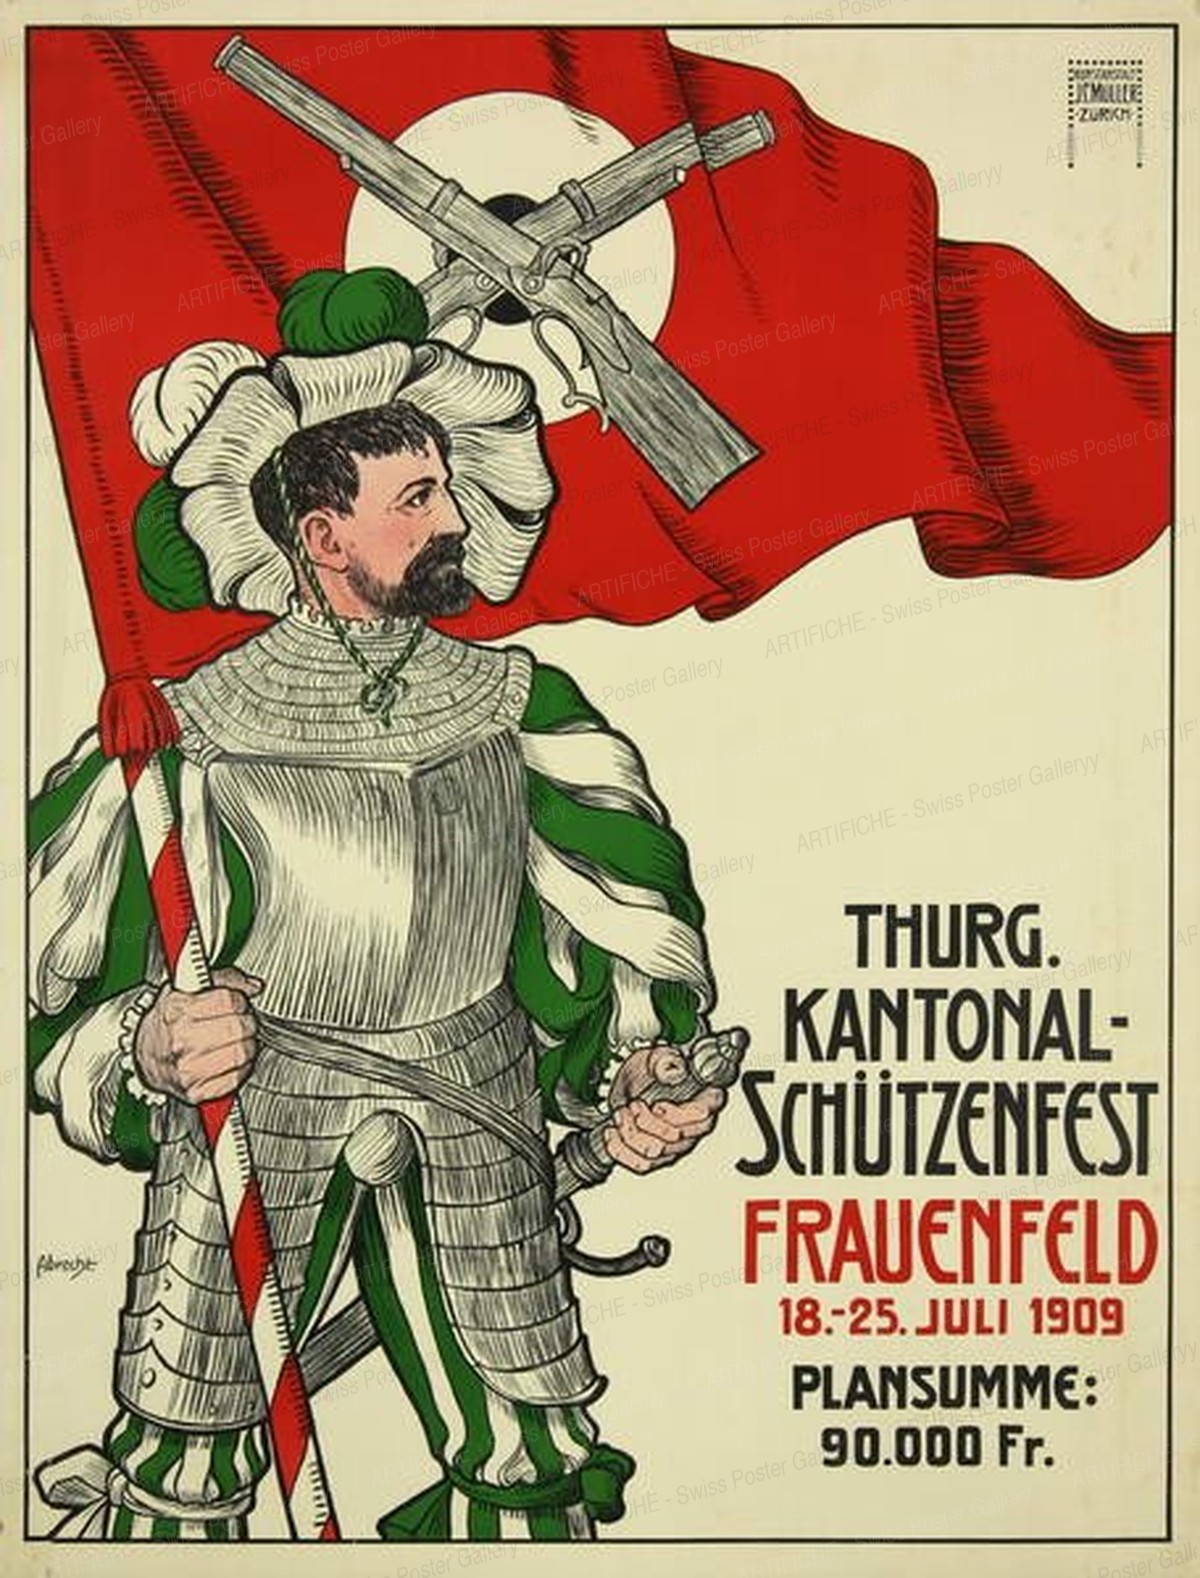 Thurg. Kantonalschützenfest Frauenfeld – 18. – 25. Juli 1909, Abrecht